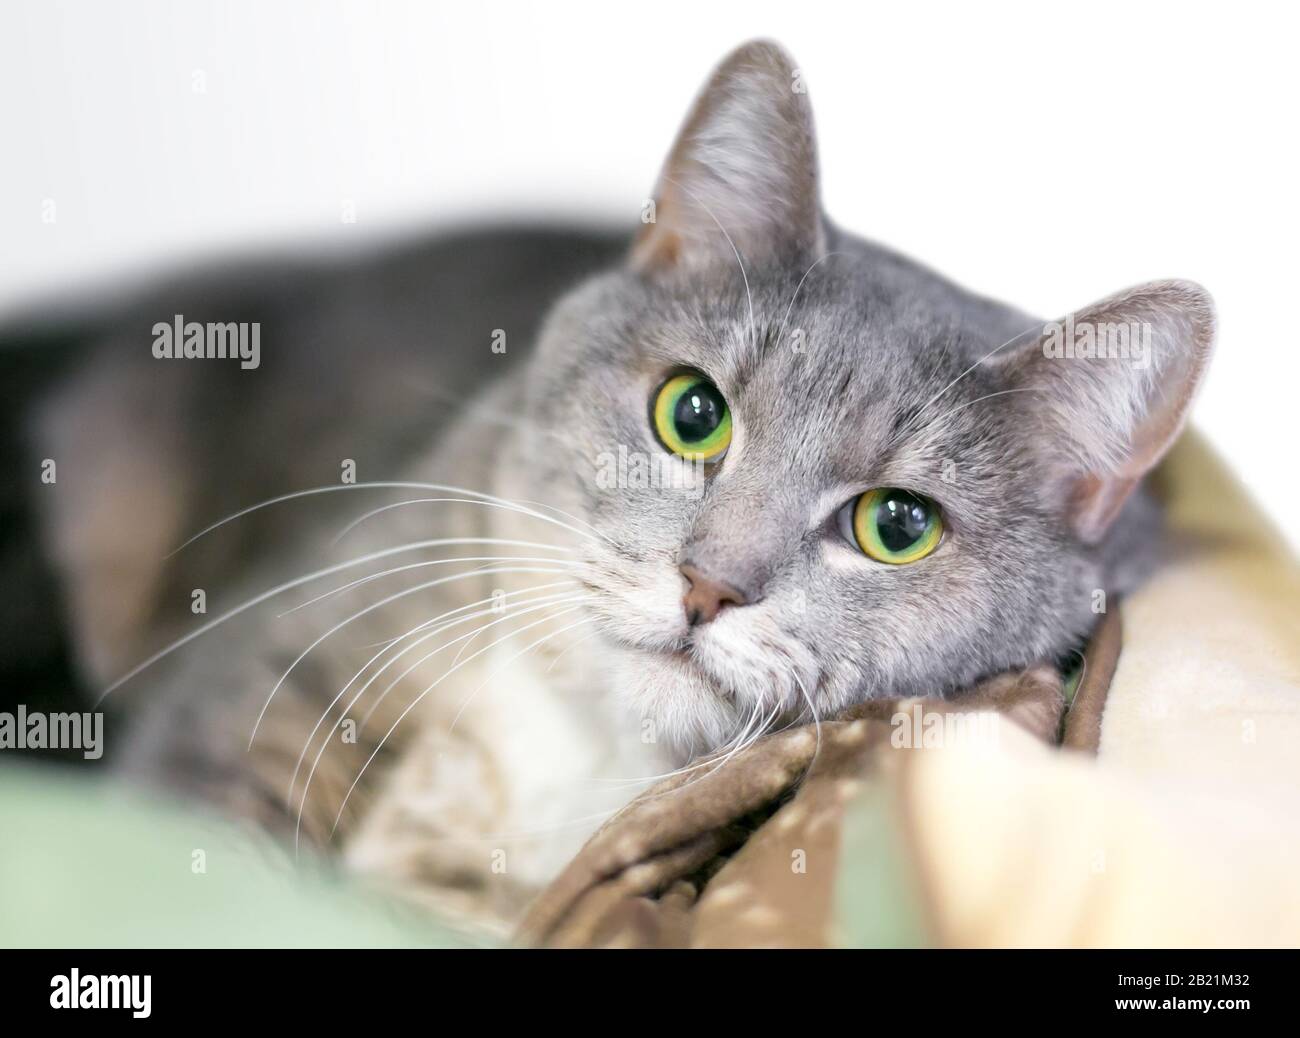 Un chat tabby domestique de shorthair avec des yeux vert lumineux se détendant dans un lit de chat Banque D'Images